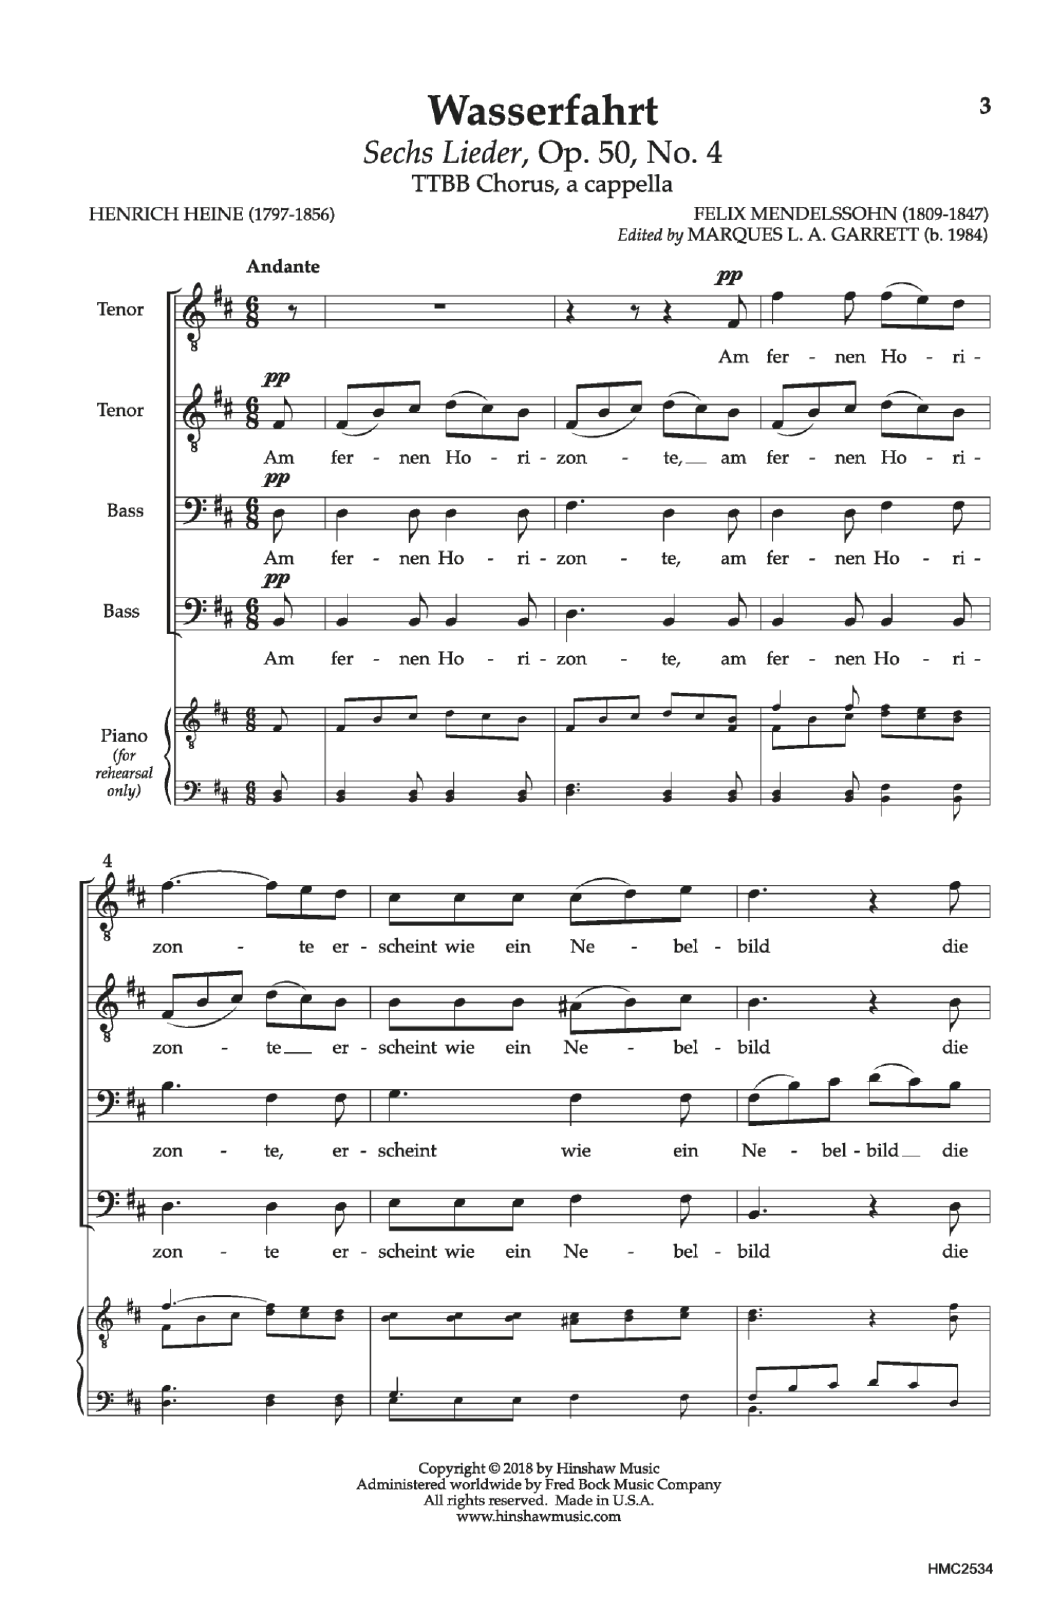 Felix Mendelssohn Wasserfahrt sheet music notes and chords arranged for Choir